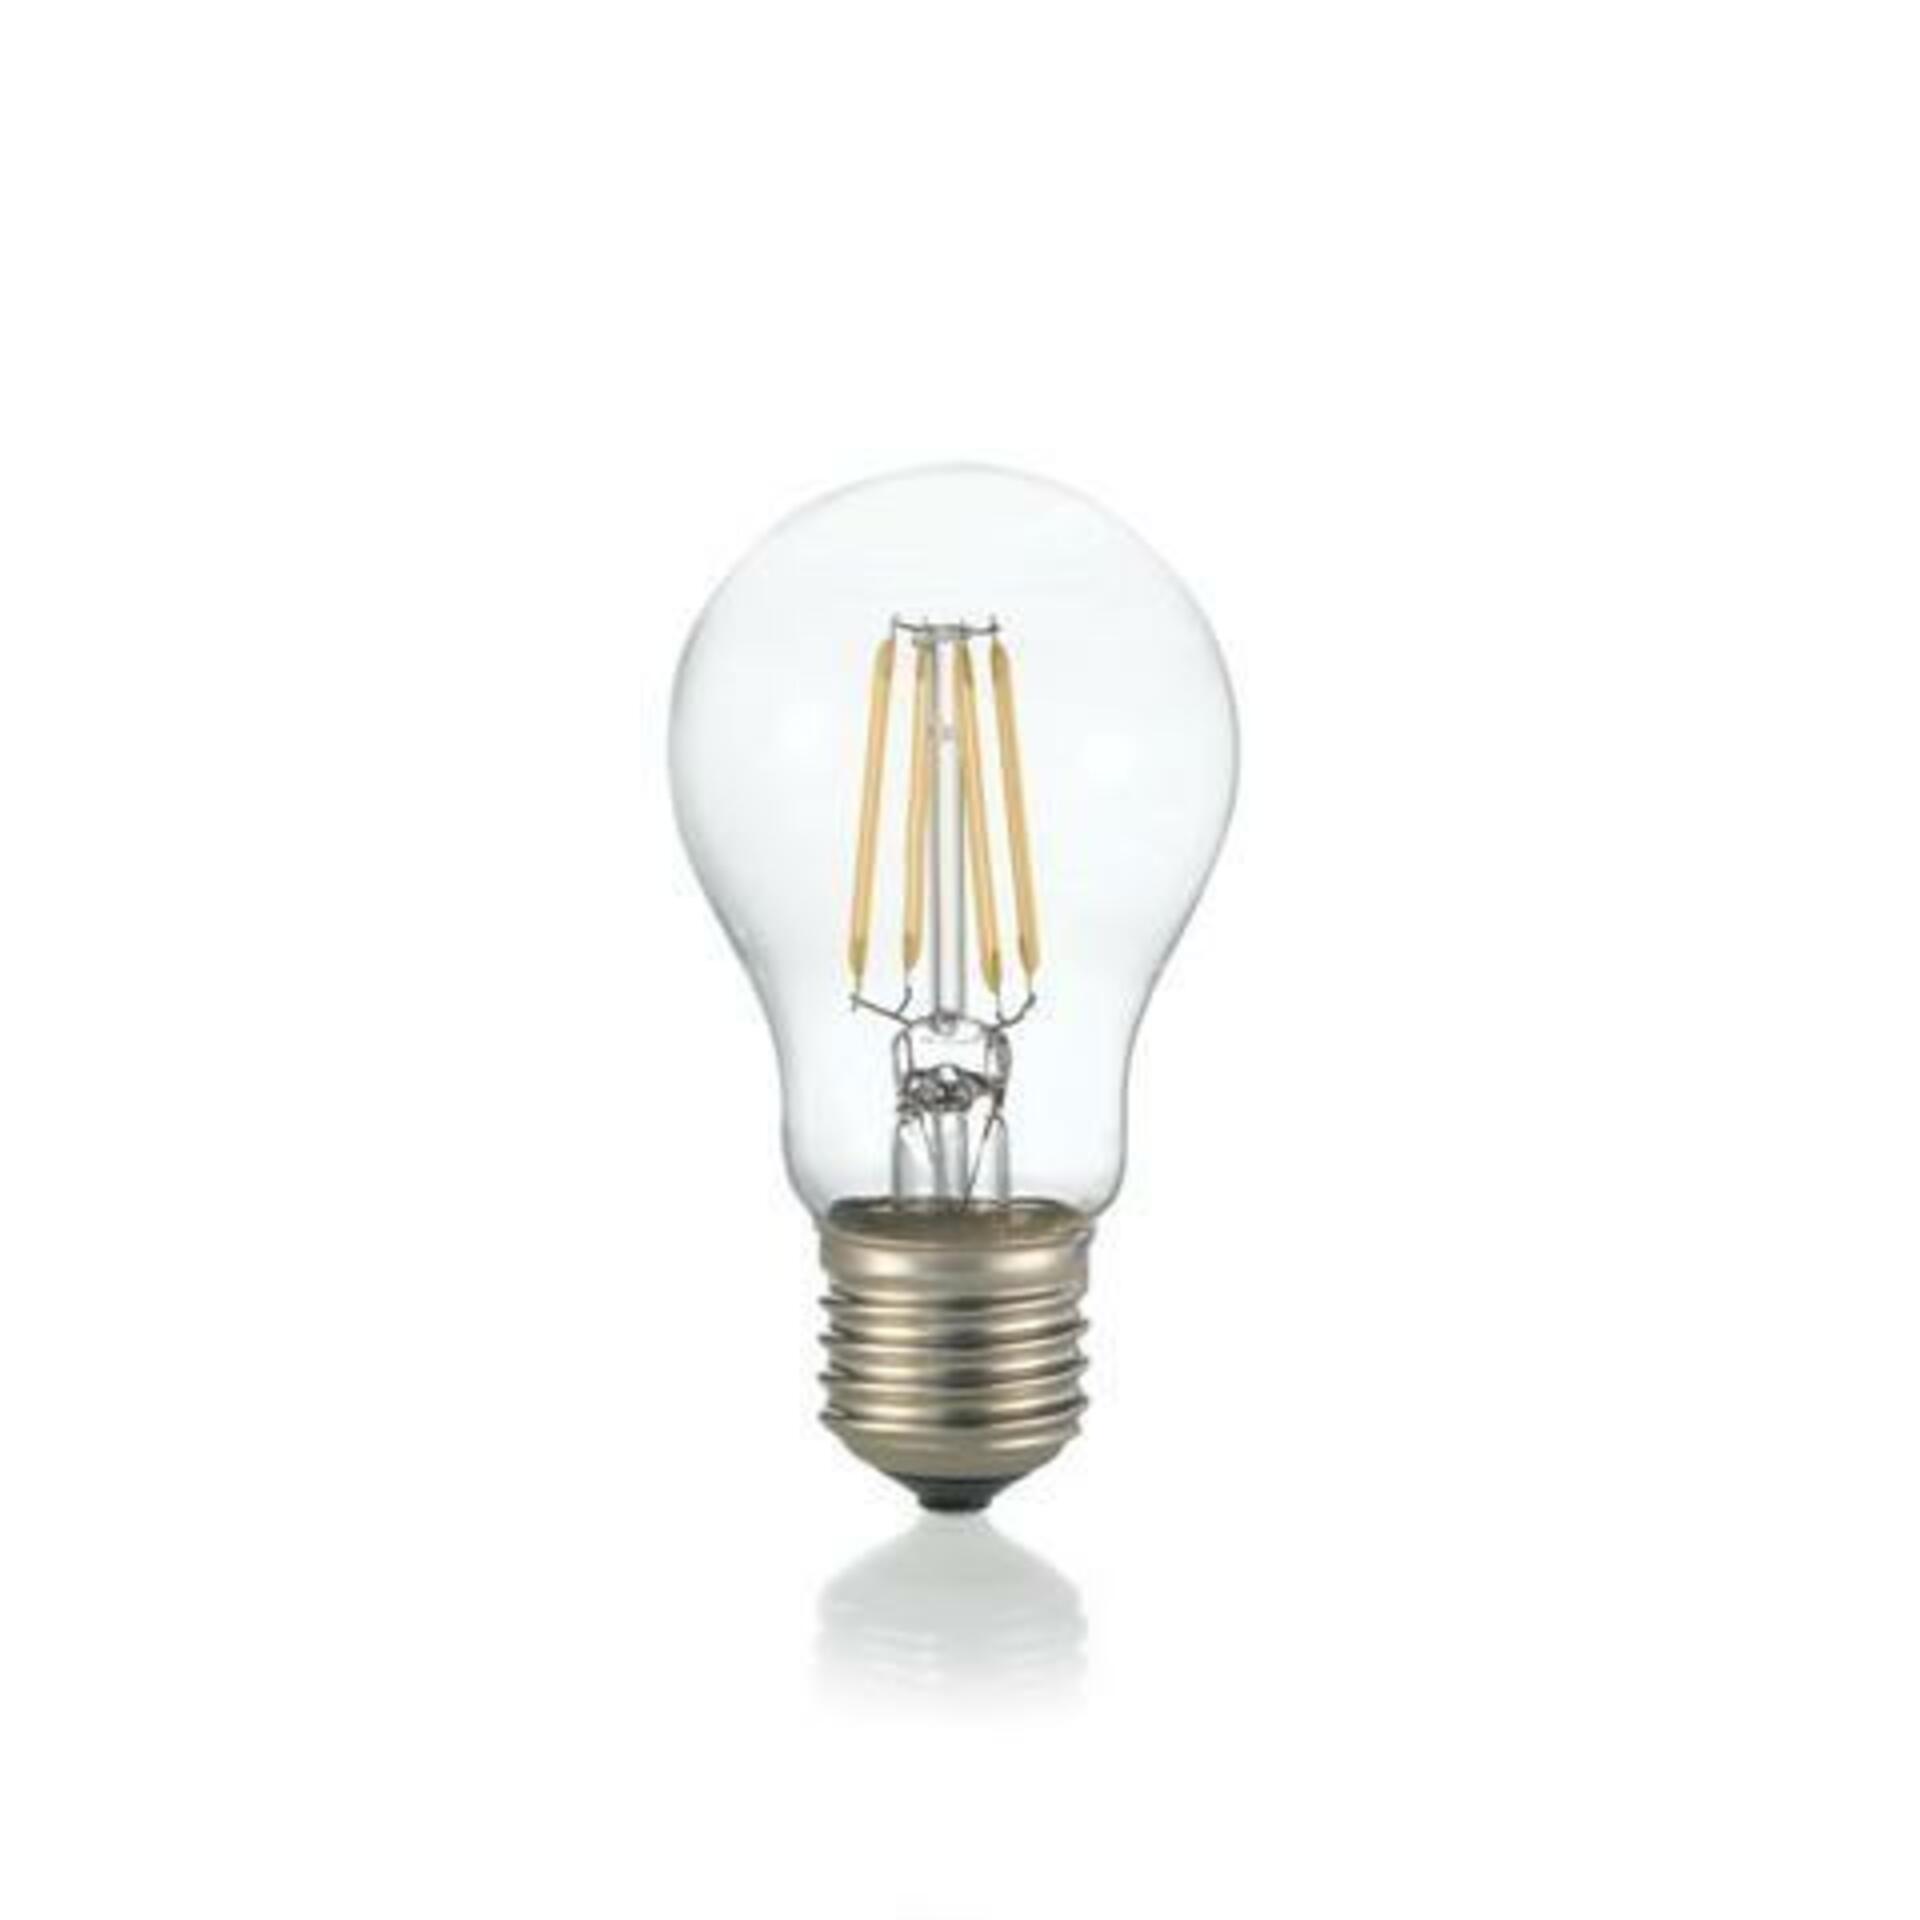 LED Filamentová žárovka Ideal Lux Goccia Trasparente 270920 E27 10W 1400lm 4000K čirá nestmívatelná